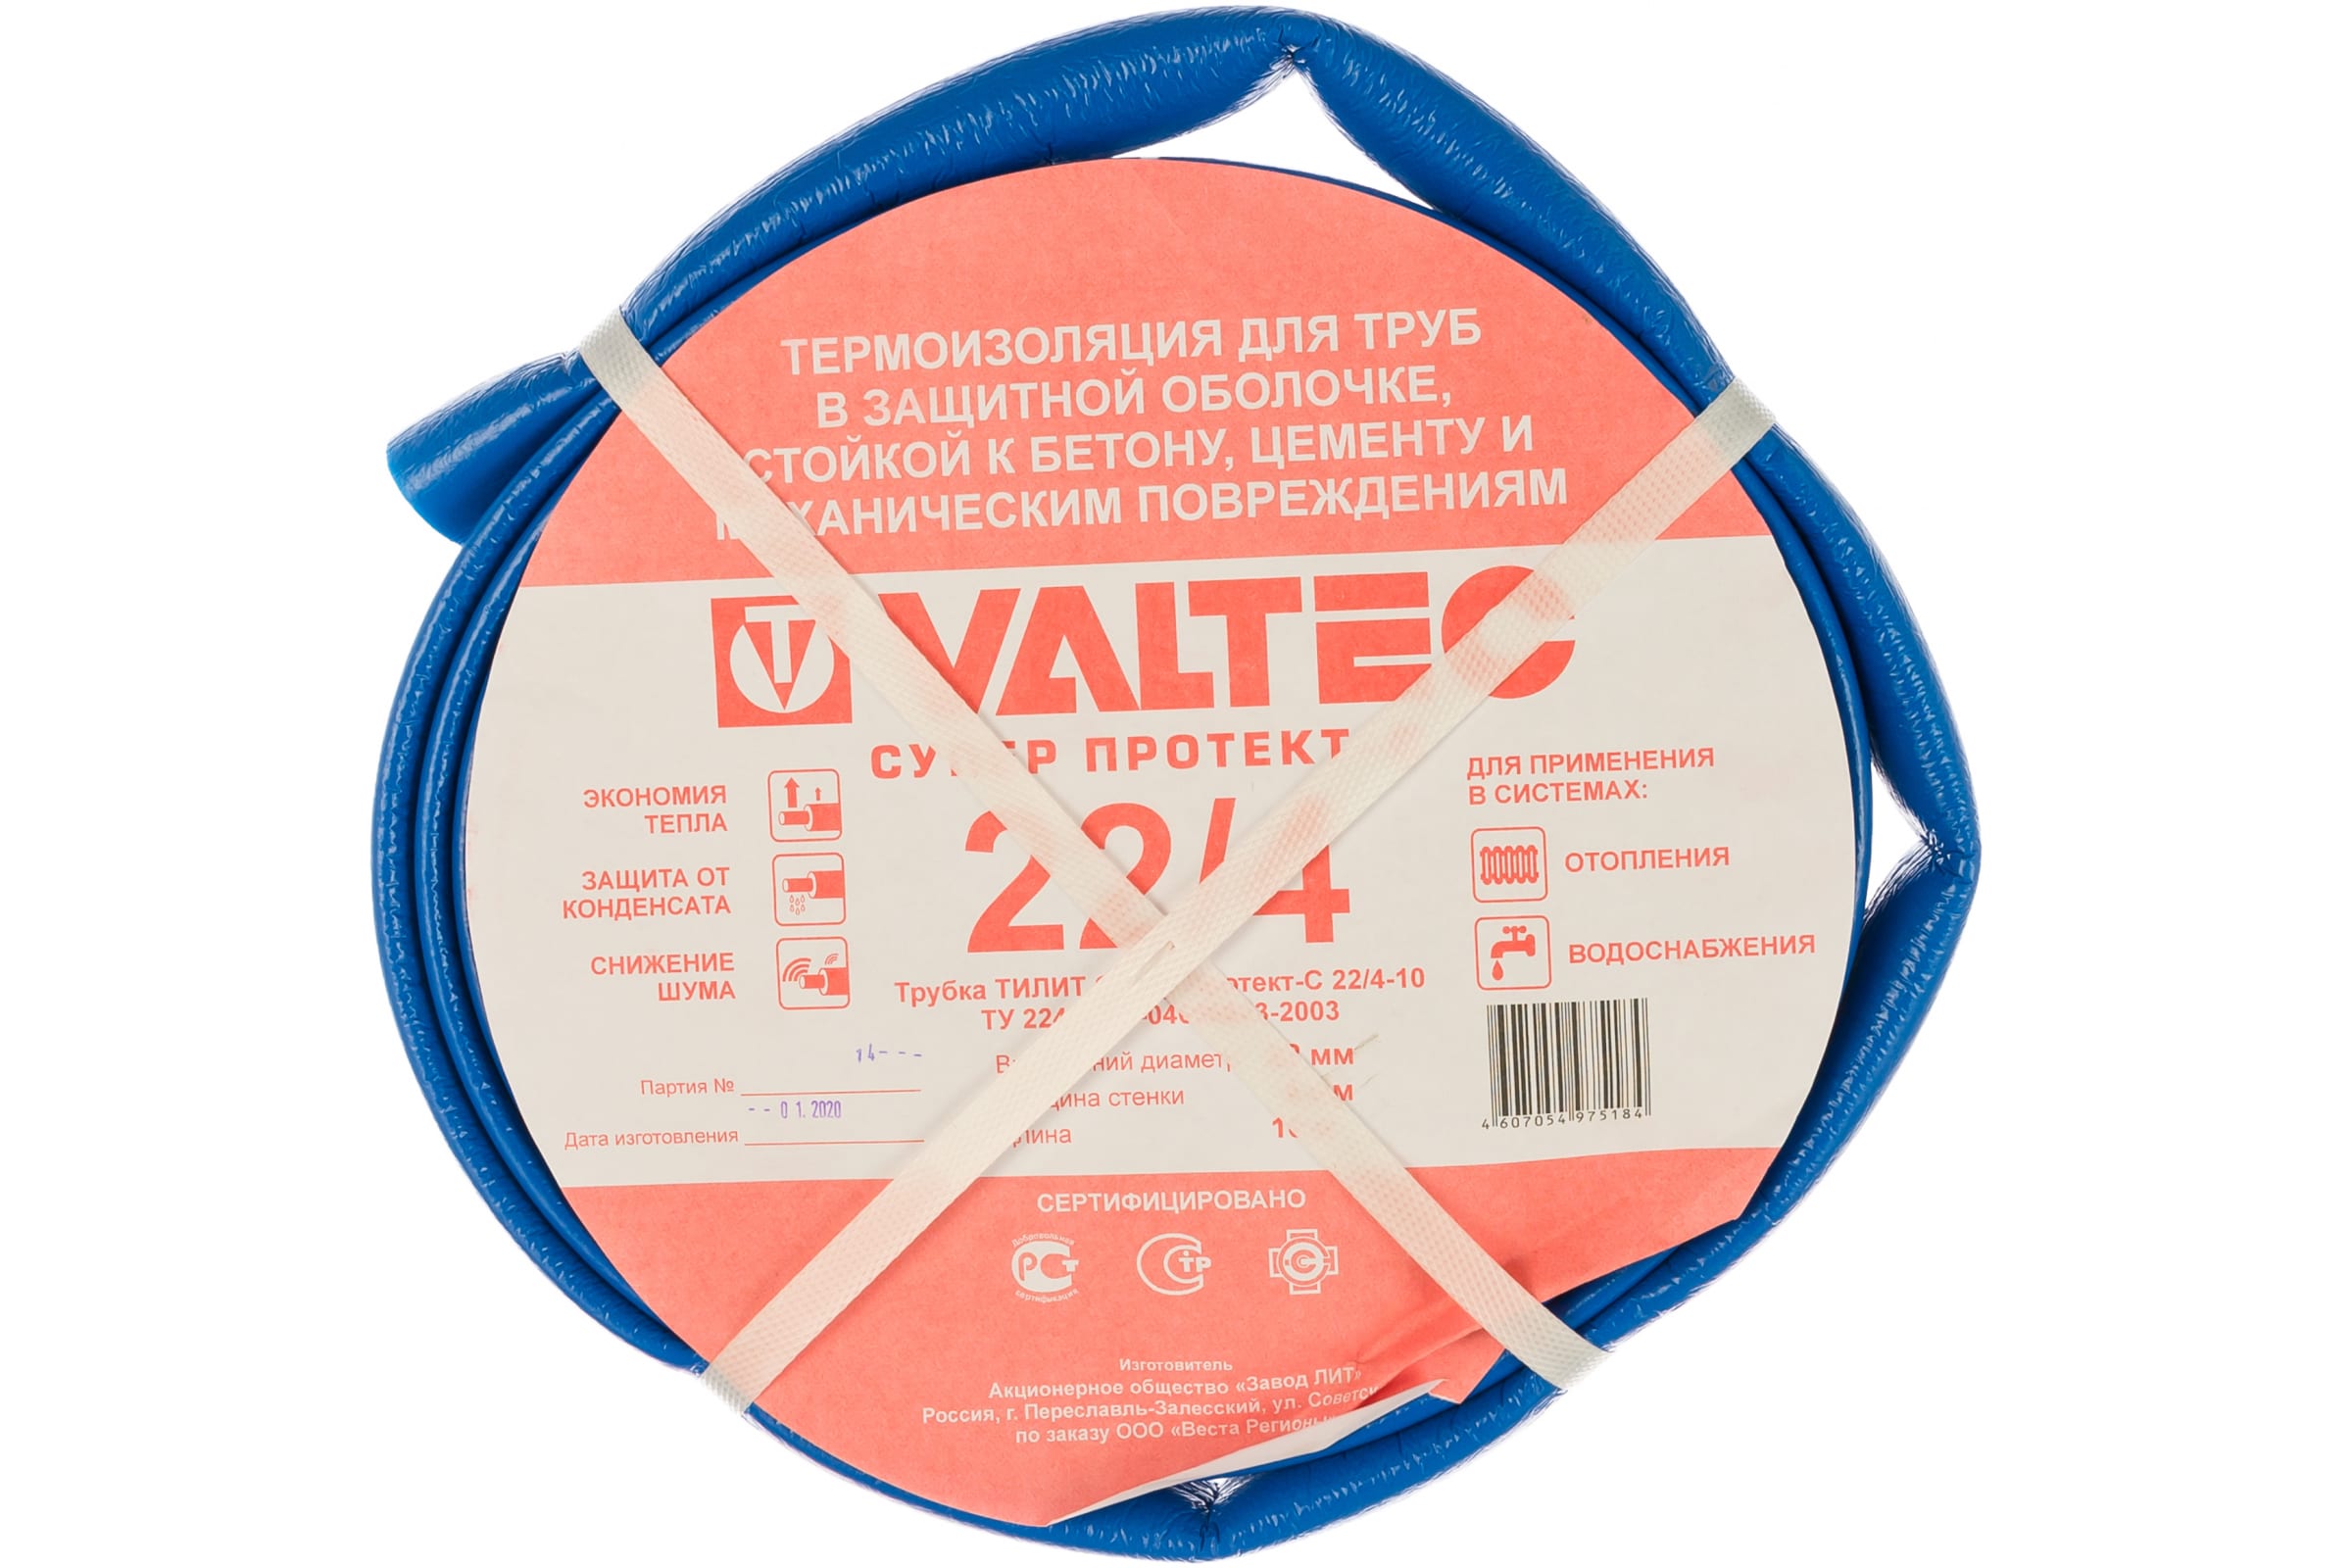 фото Valtec теплоизоляция супер протект 22 4 мм синий 10м 82945